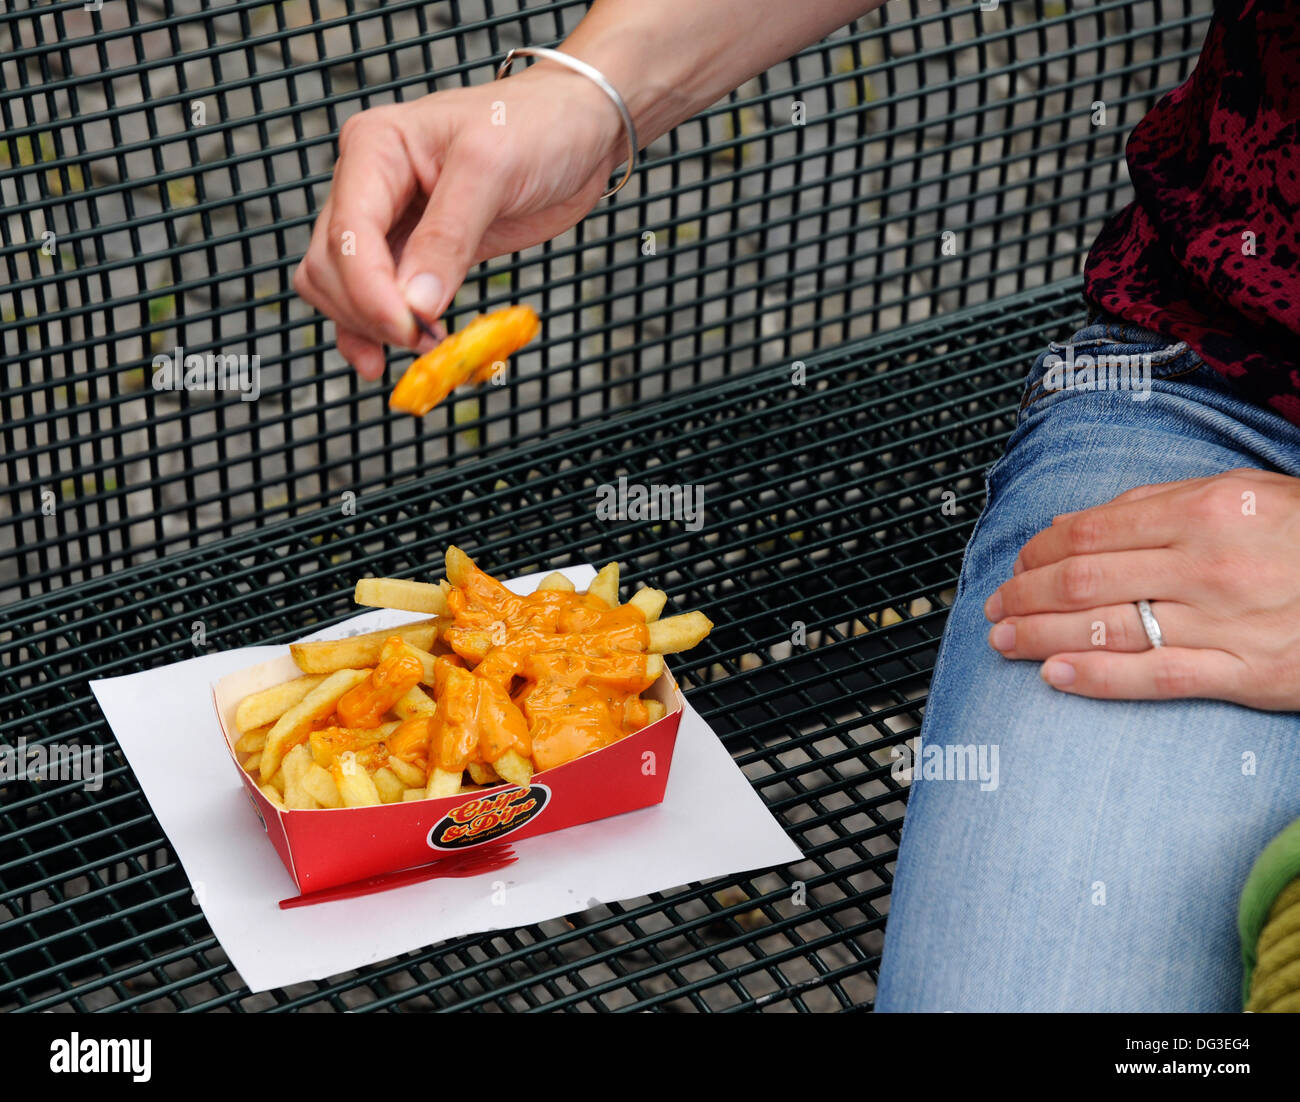 Manger des frites avec de la mayonnaise belge sur un siège public Banque D'Images